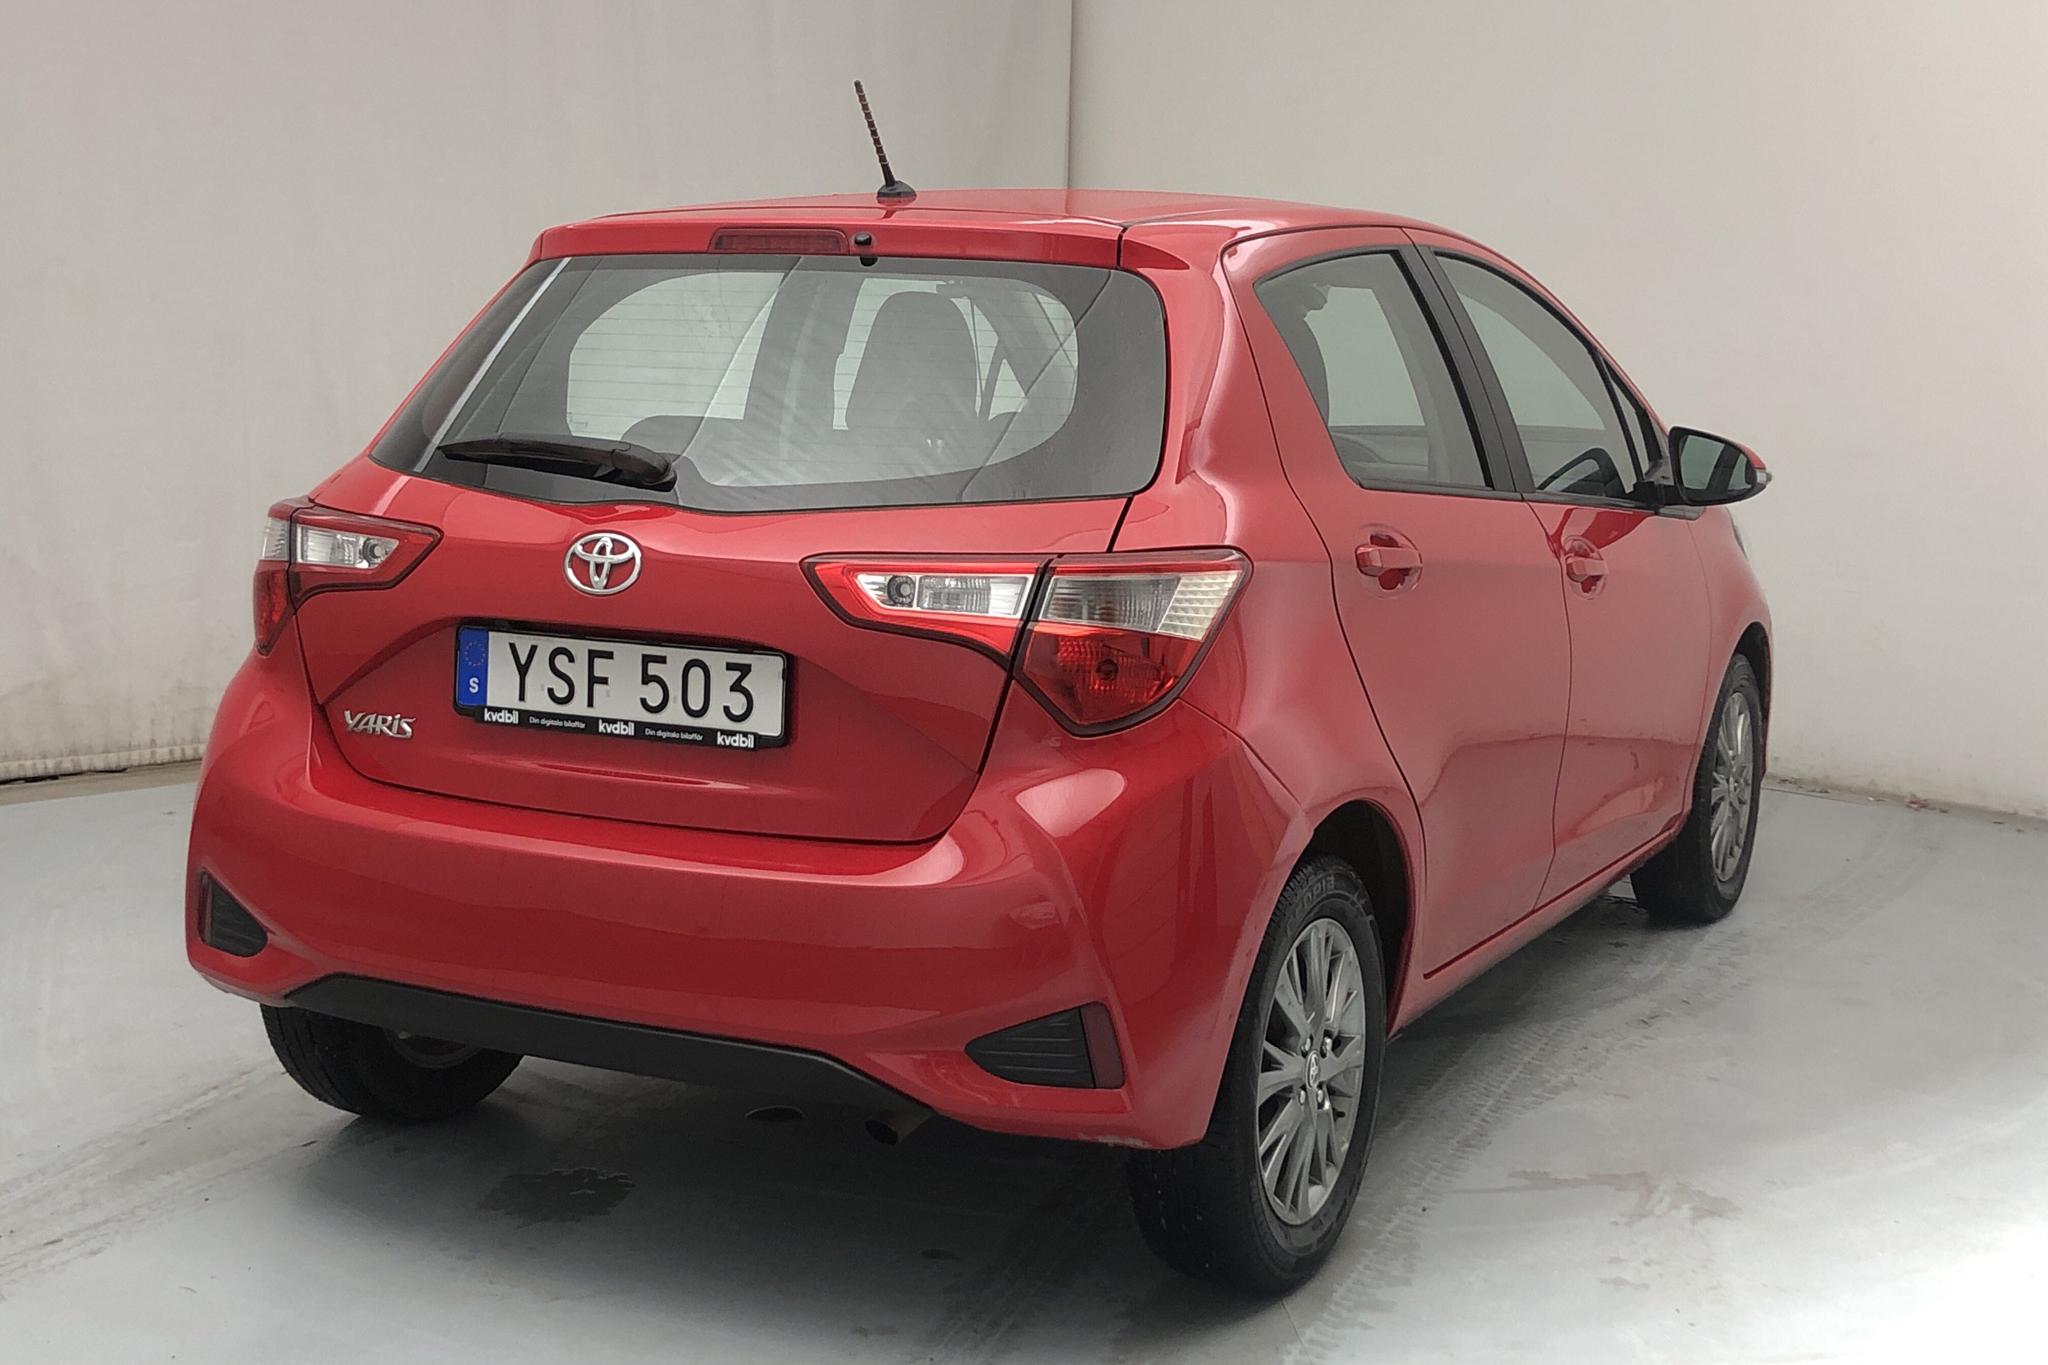 Toyota Yaris 1.5 5dr (111hk) - 61 130 km - Manual - red - 2018